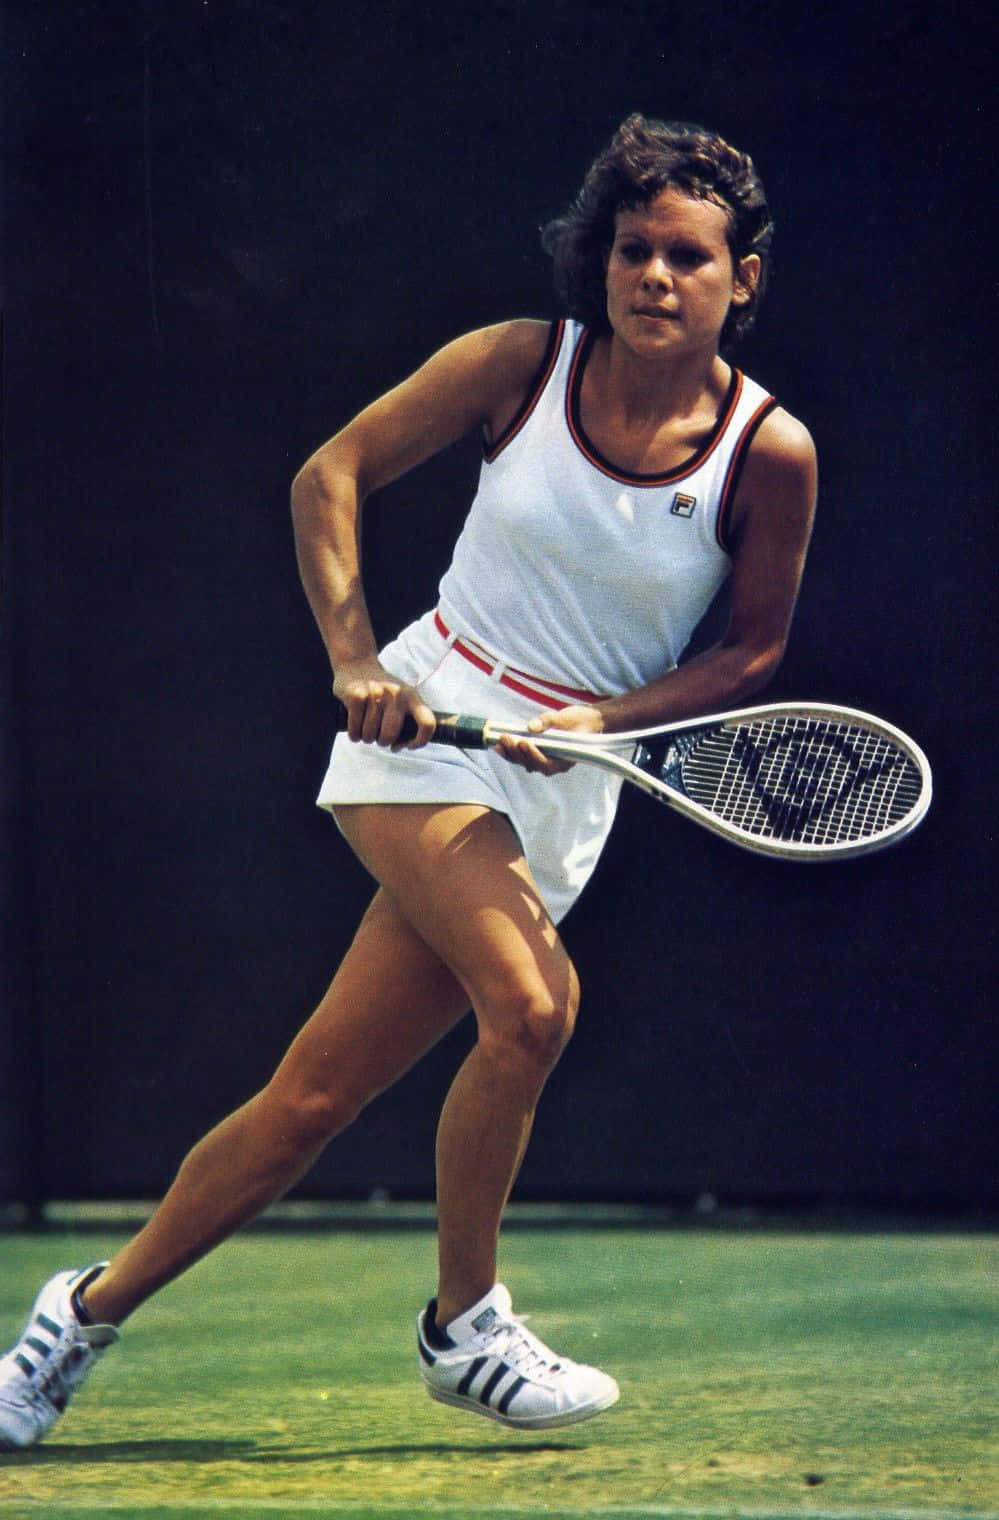 Tennisspielerin Evonne Goolagong Cawley Porträt Wallpaper